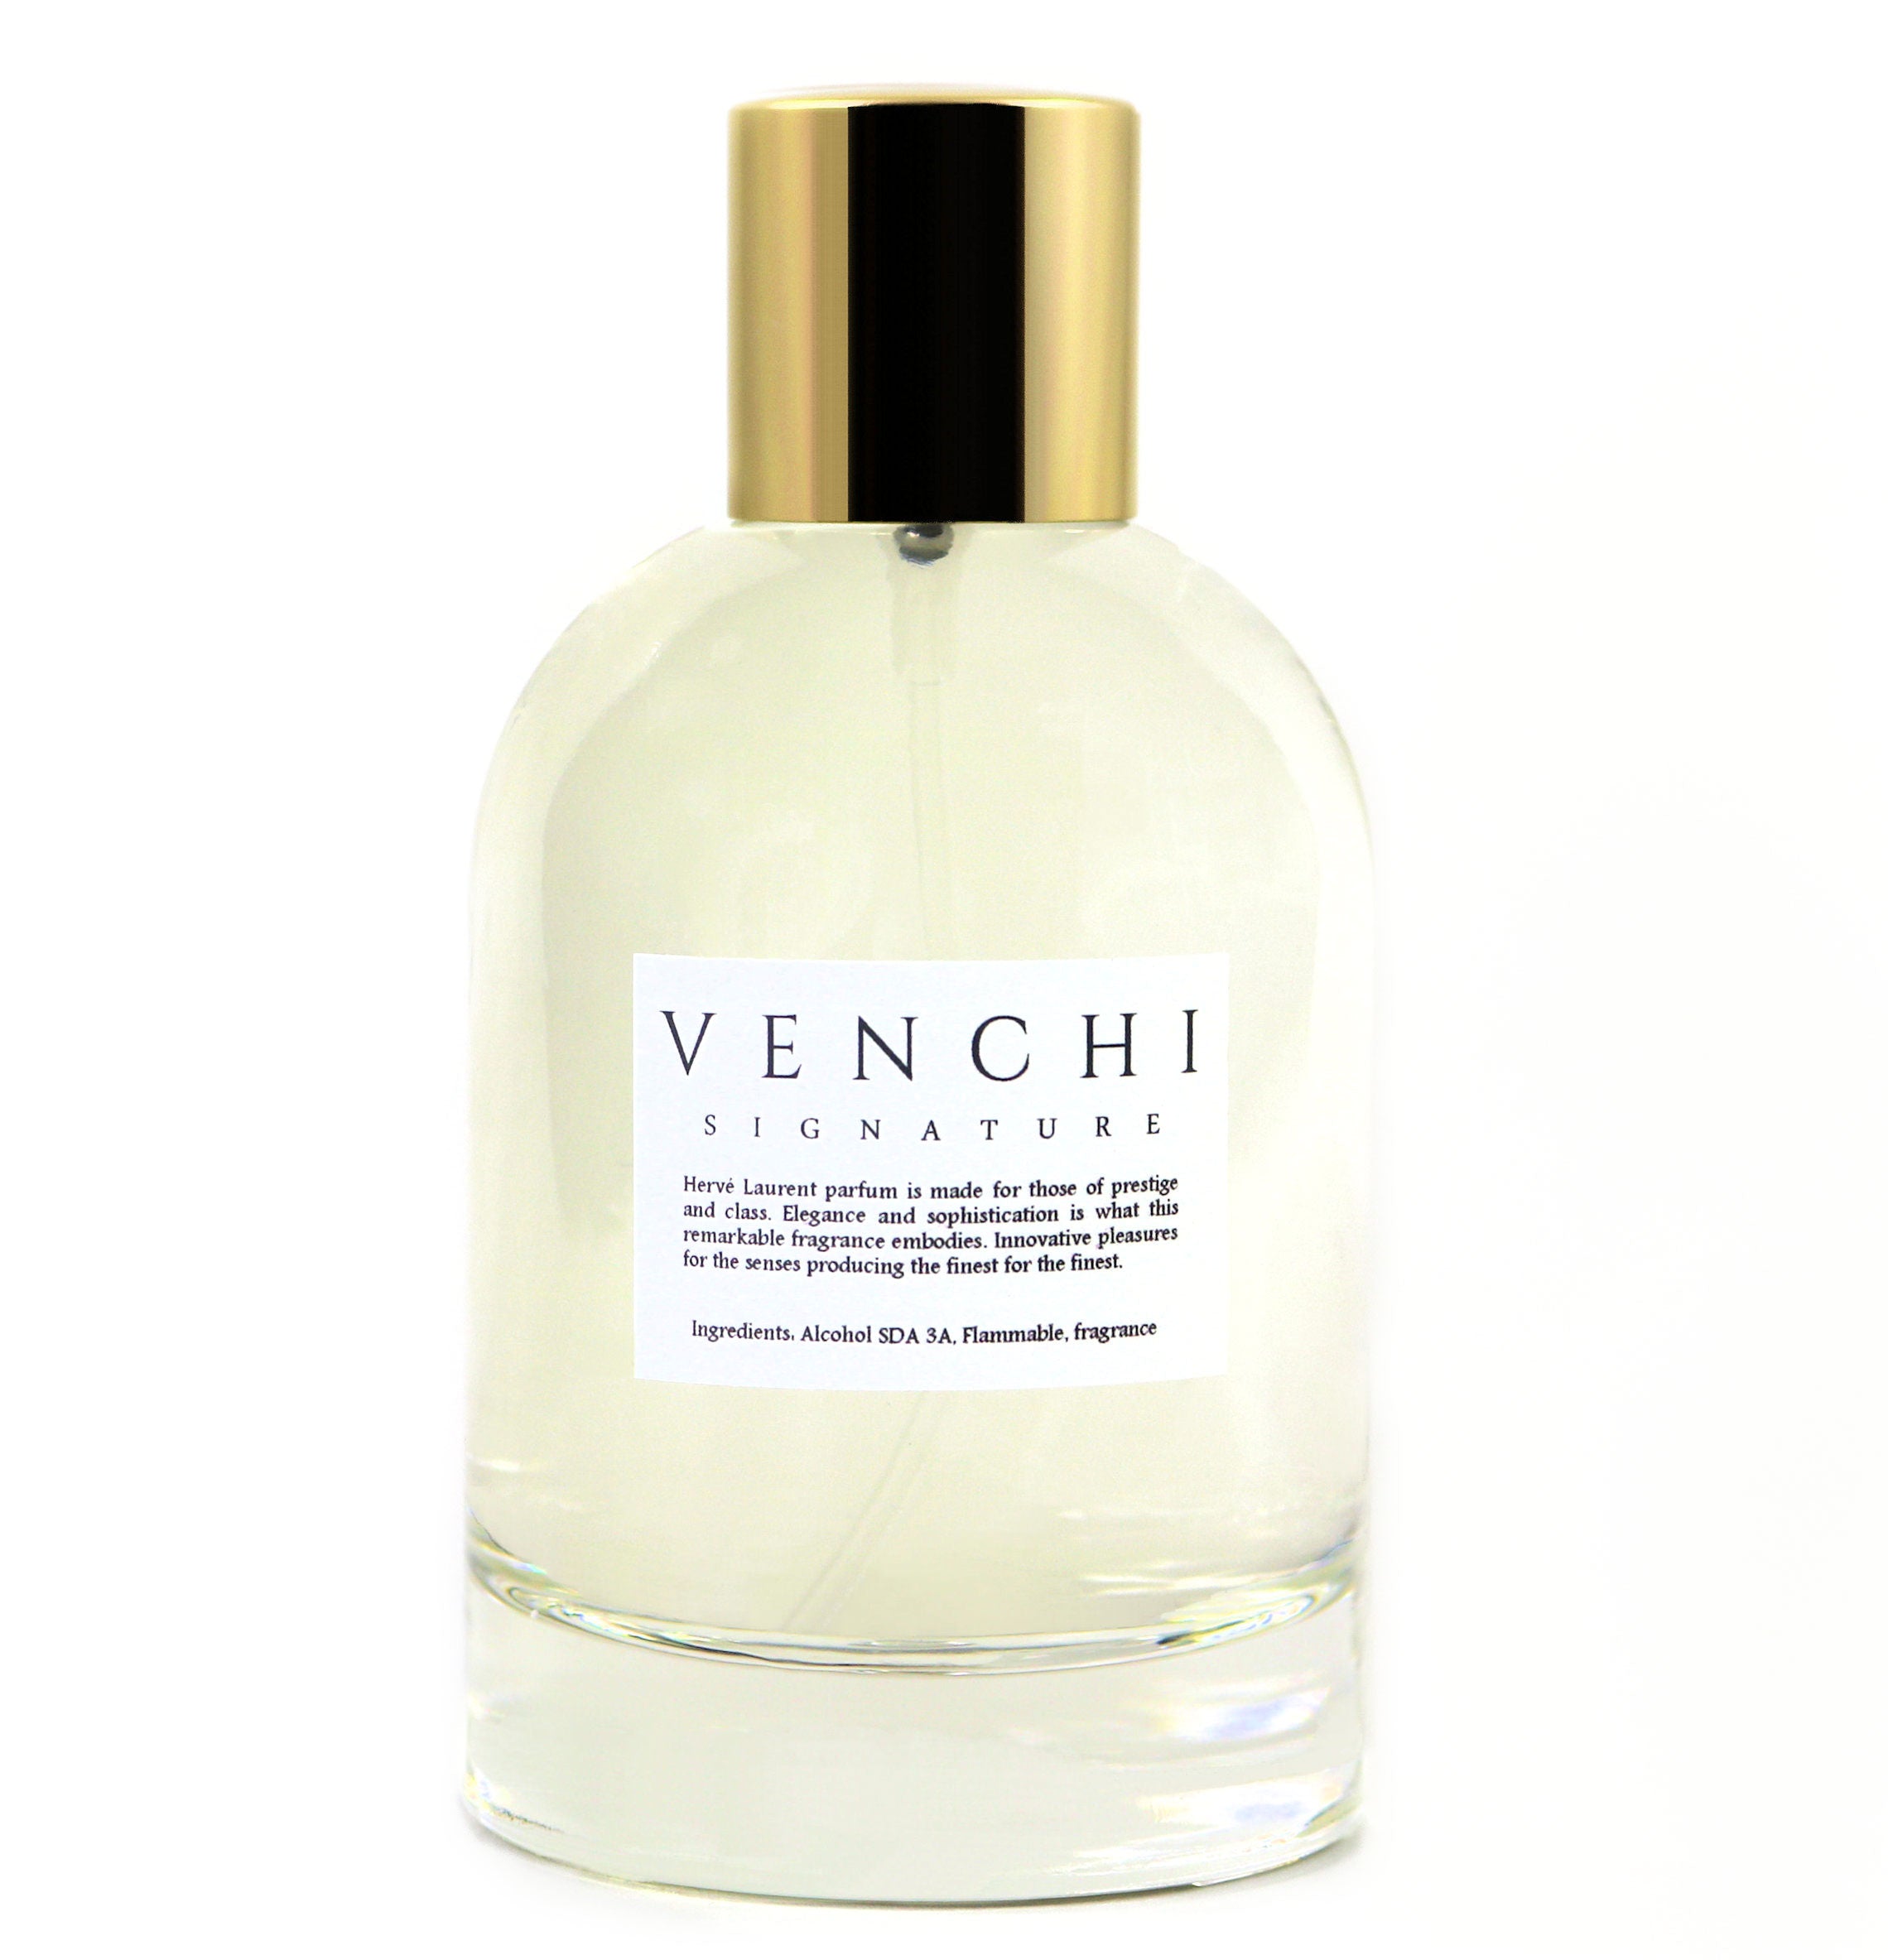 Herve Laurent, Perfume, Parfum, High End Luxury, Designer Fragrance, Fashion Fragrance, Venchi, Men Fragrance